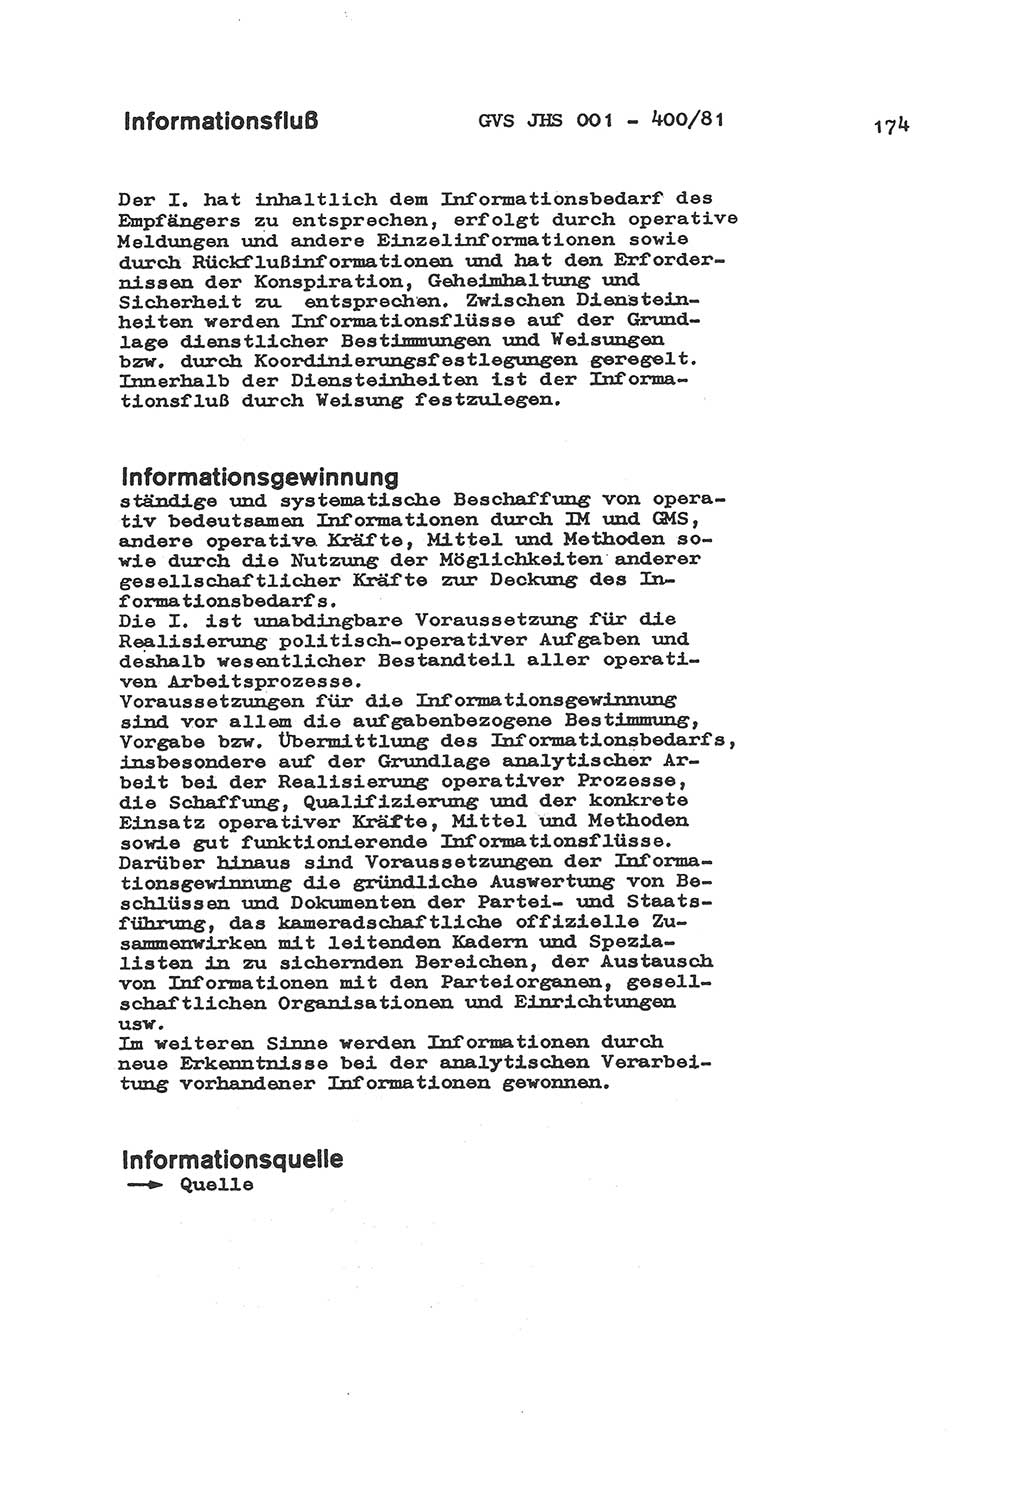 Wörterbuch der politisch-operativen Arbeit, Ministerium für Staatssicherheit (MfS) [Deutsche Demokratische Republik (DDR)], Juristische Hochschule (JHS), Geheime Verschlußsache (GVS) o001-400/81, Potsdam 1985, Blatt 174 (Wb. pol.-op. Arb. MfS DDR JHS GVS o001-400/81 1985, Bl. 174)